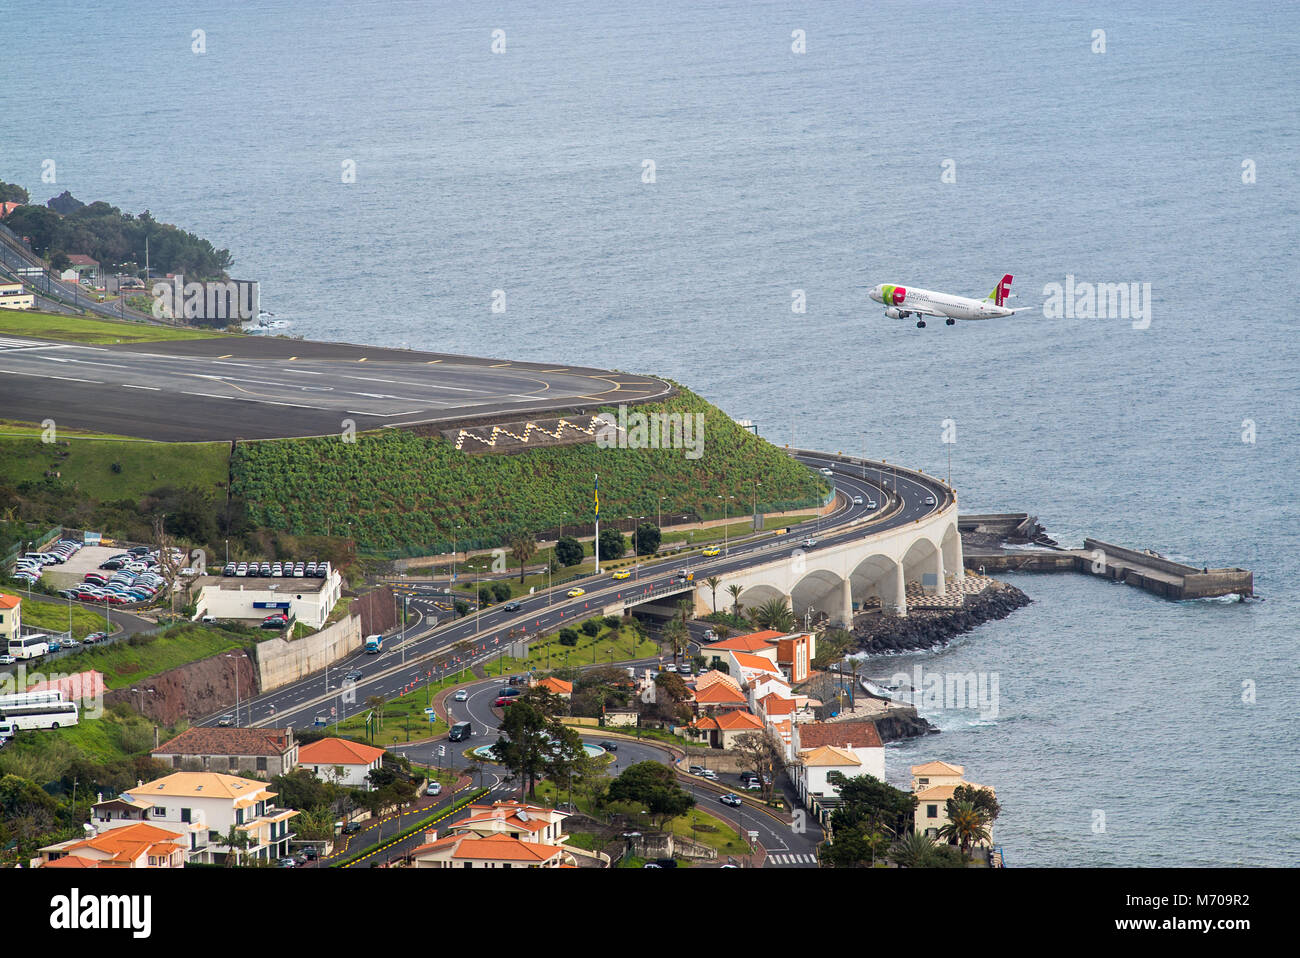 Un avion TAP Portugal fait l'approche finale dans le défi qui lui valut l'aéroport de Funchal à l'approche de l'aéroport de Madère, Cristiano Ronaldo Banque D'Images